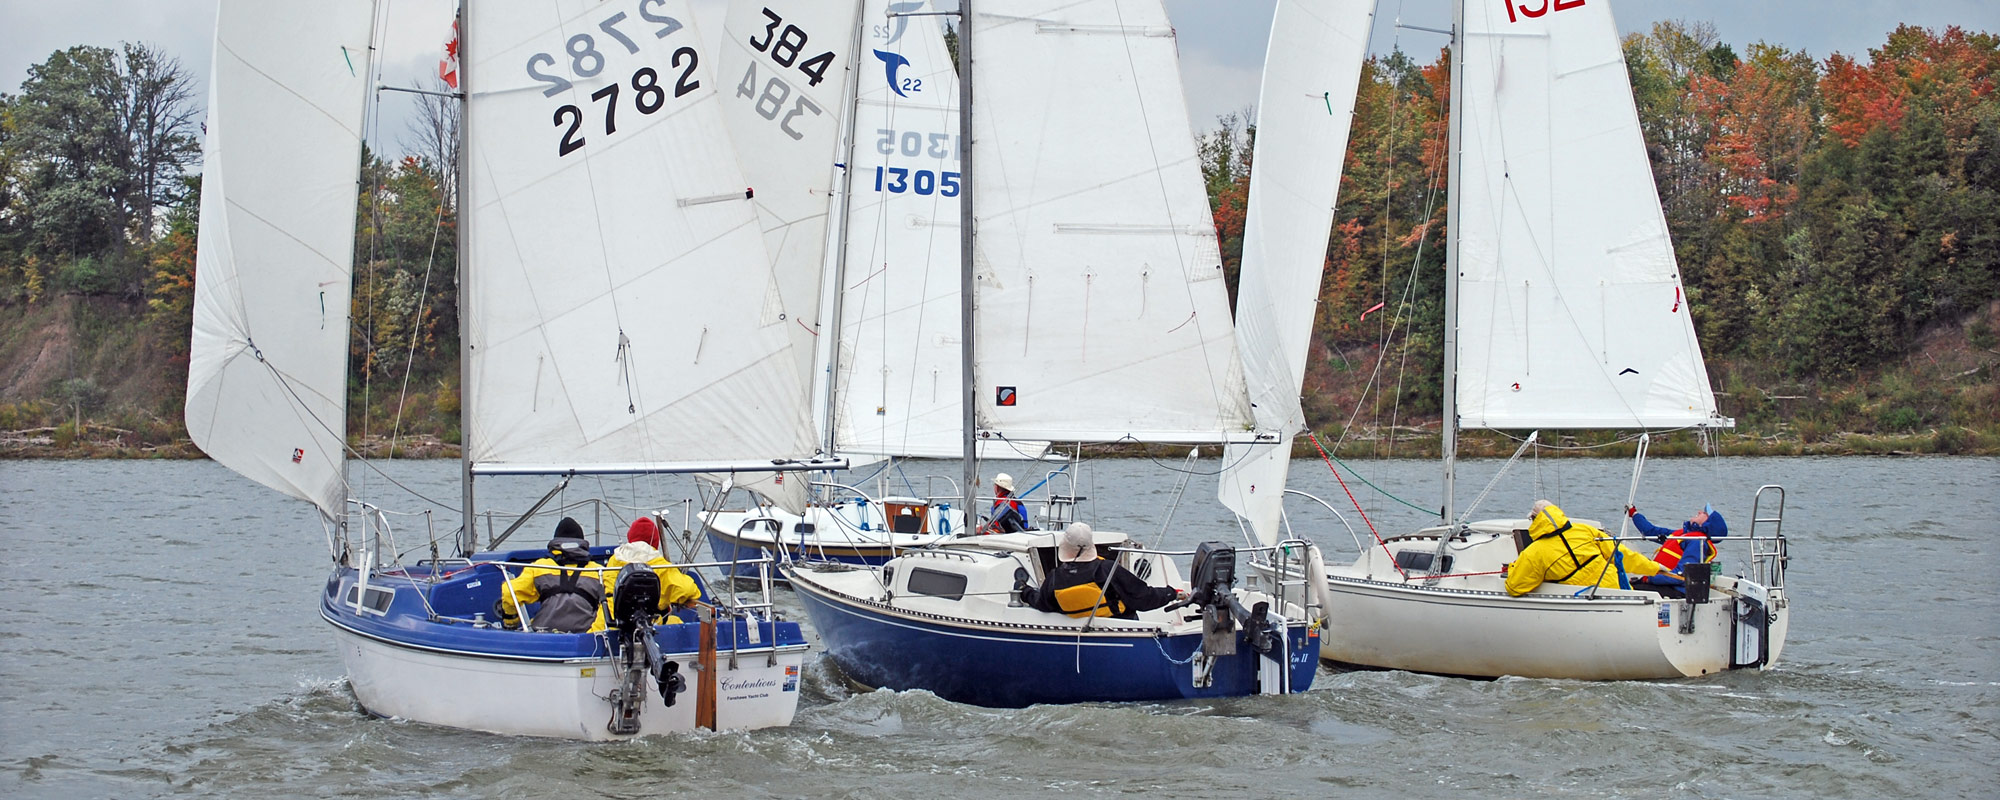 fanshawe yacht club sailing school